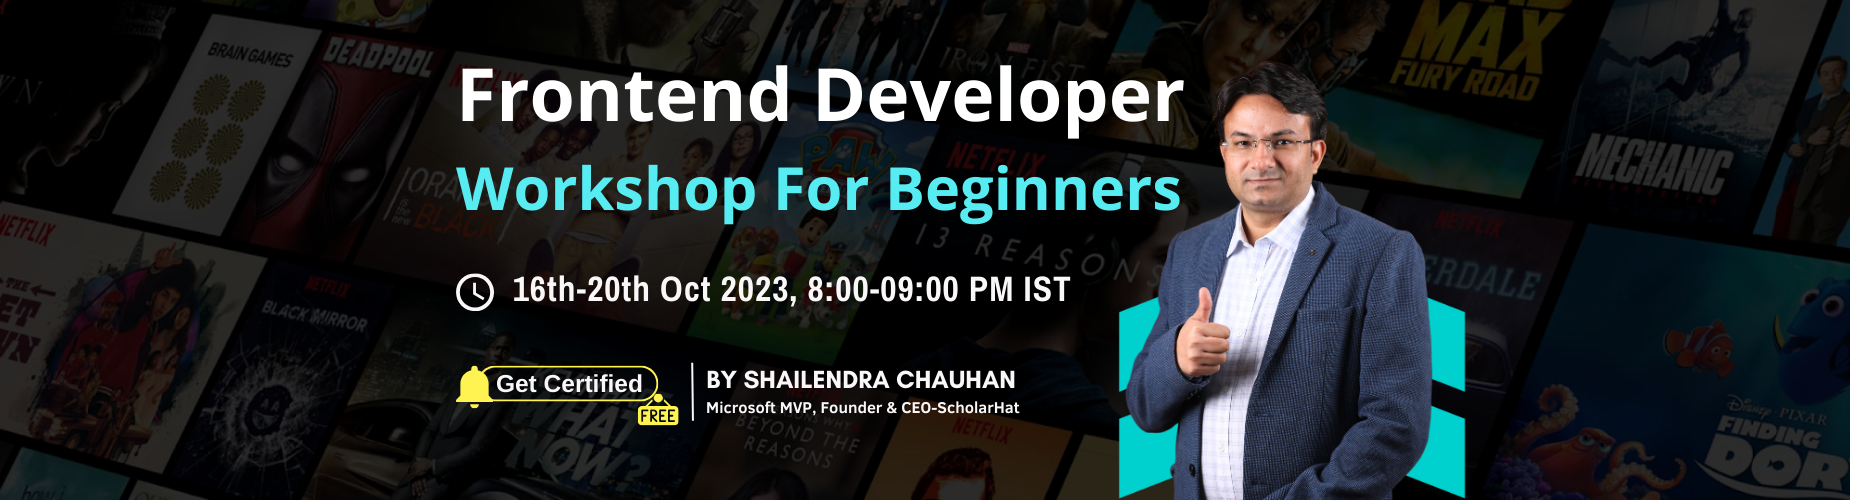 Frontend Developer Workshop For Beginners/Freshers